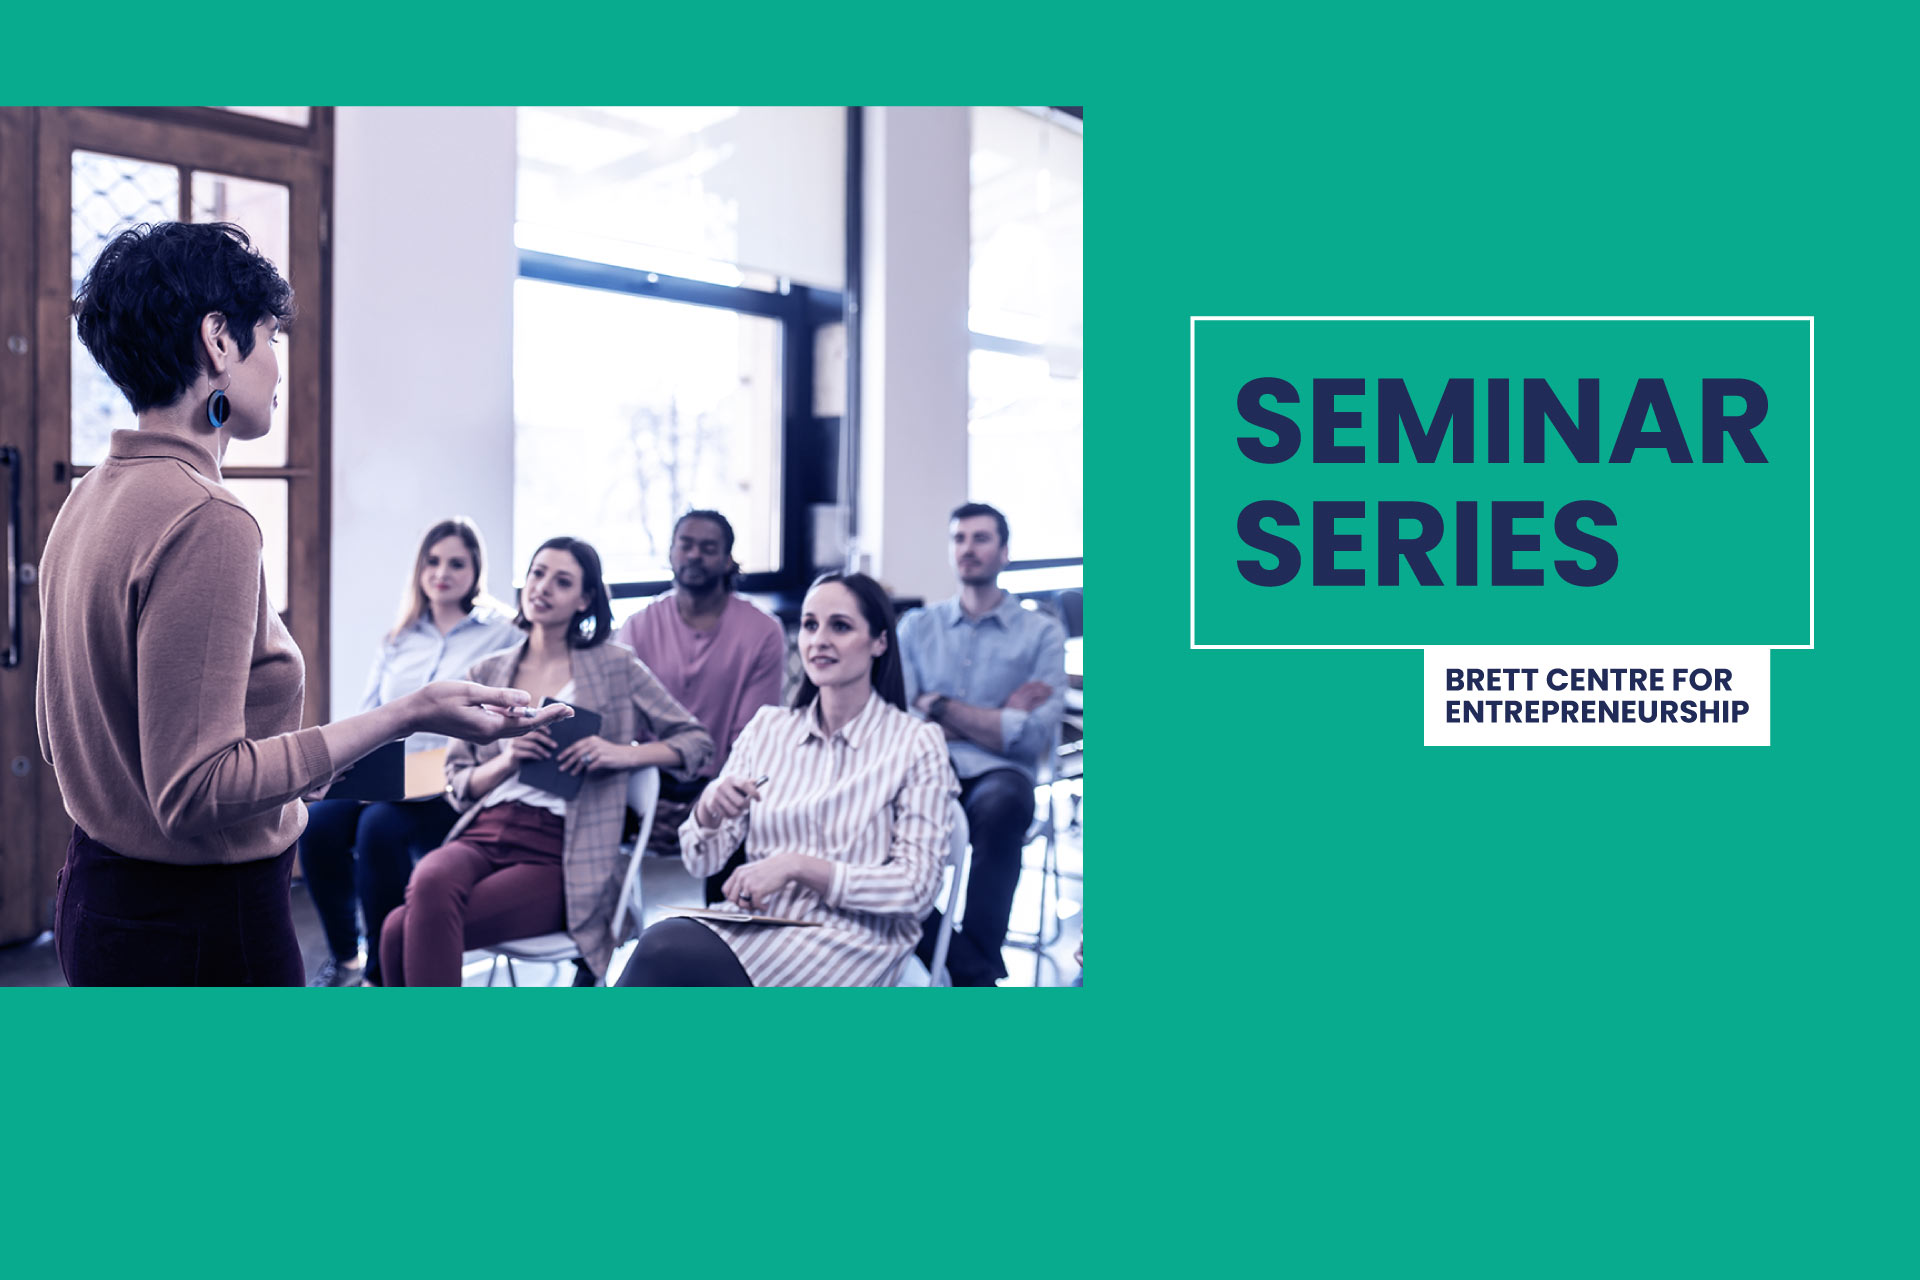 Brett Centre for Entrepreneurship - Seminar Series